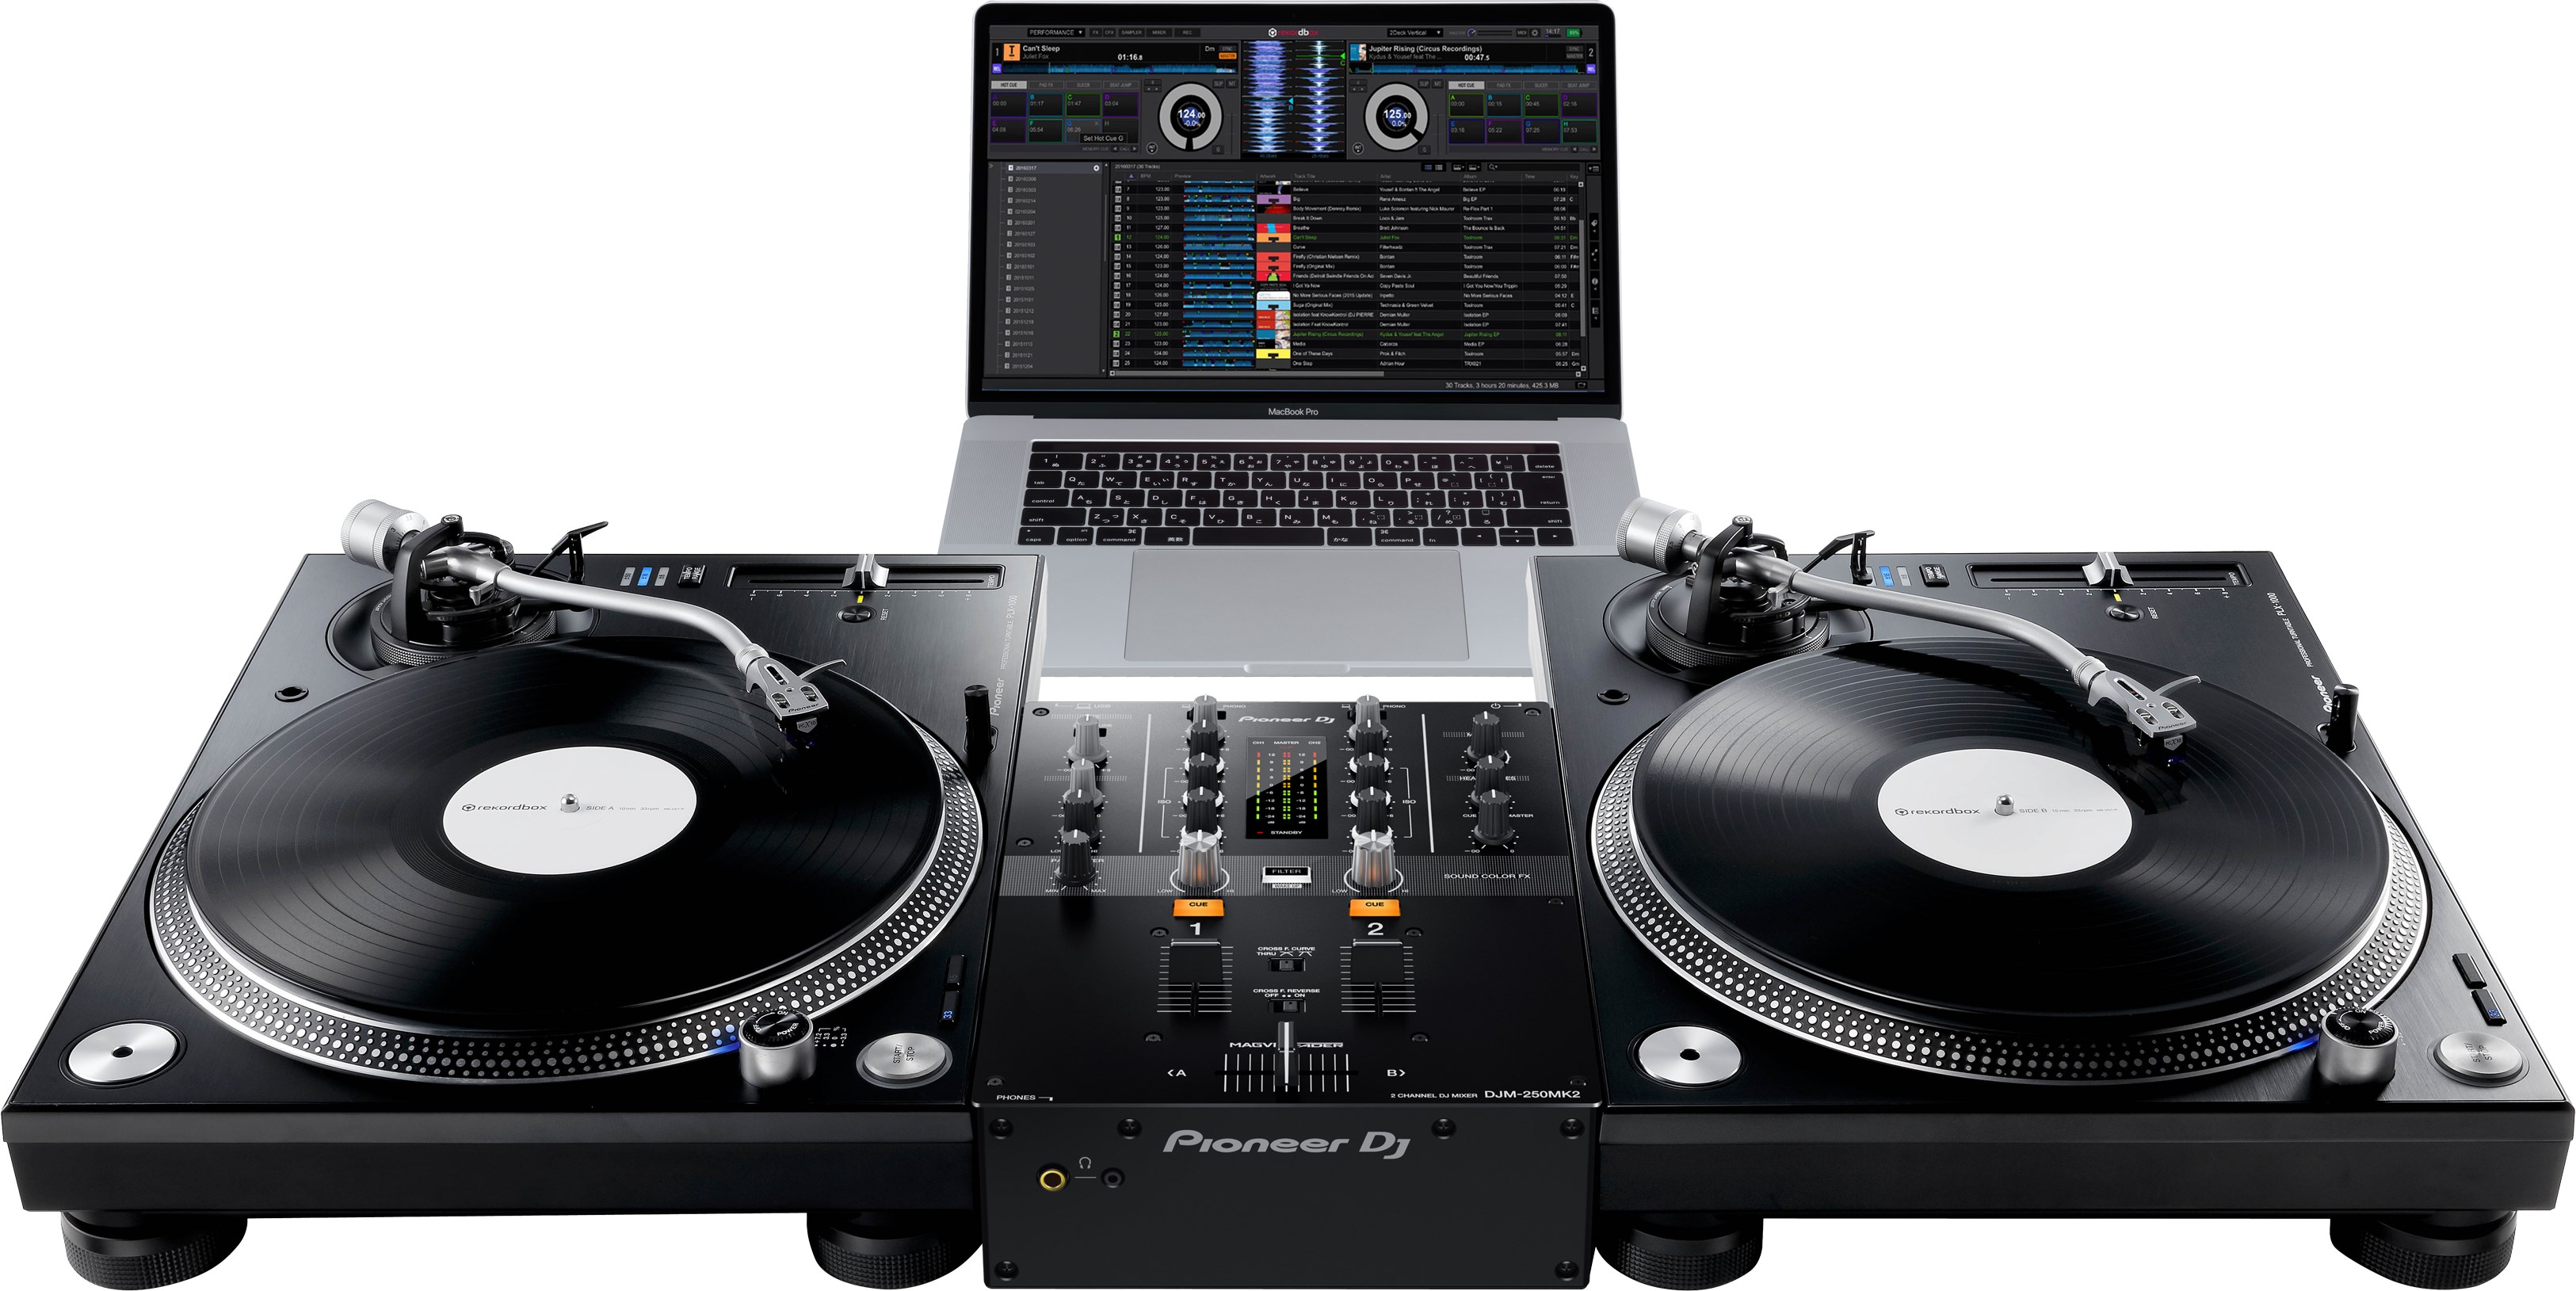 Pioneer Dj Djm-250mk2 - Mixer DJ - Variation 2